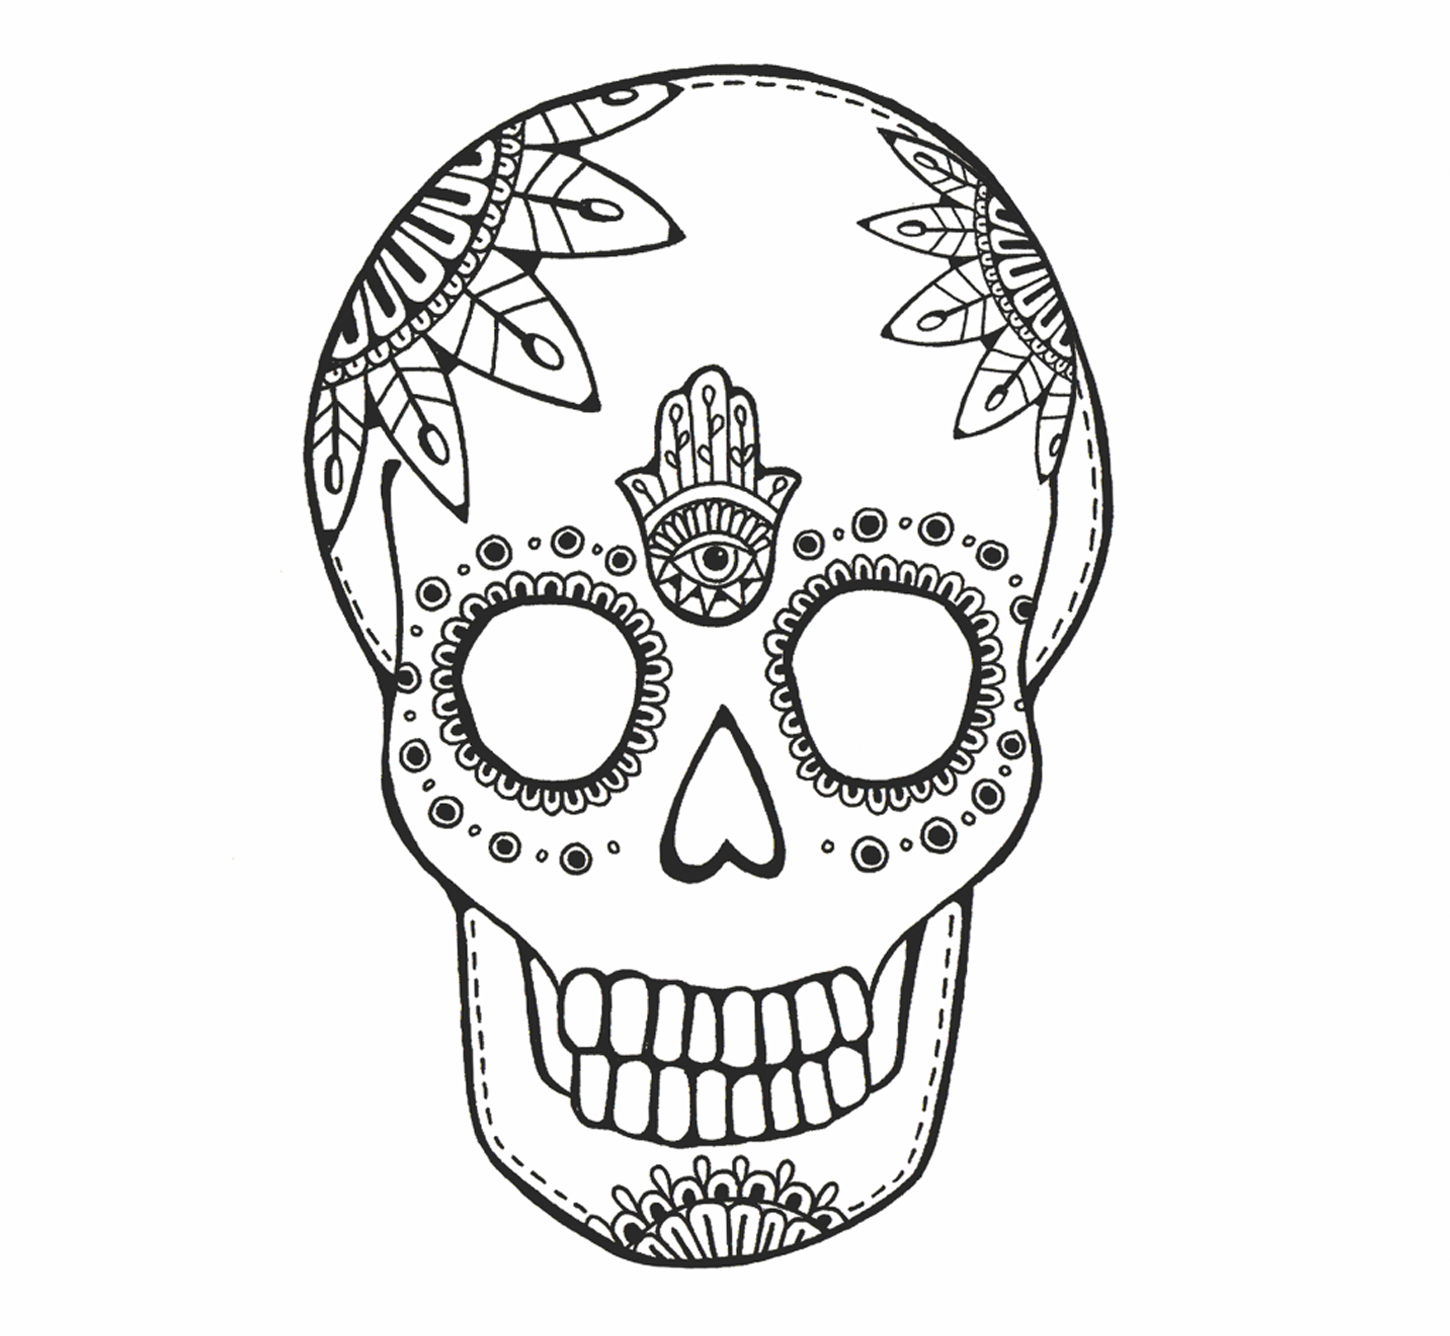 The final Xander Kostroma skull logo